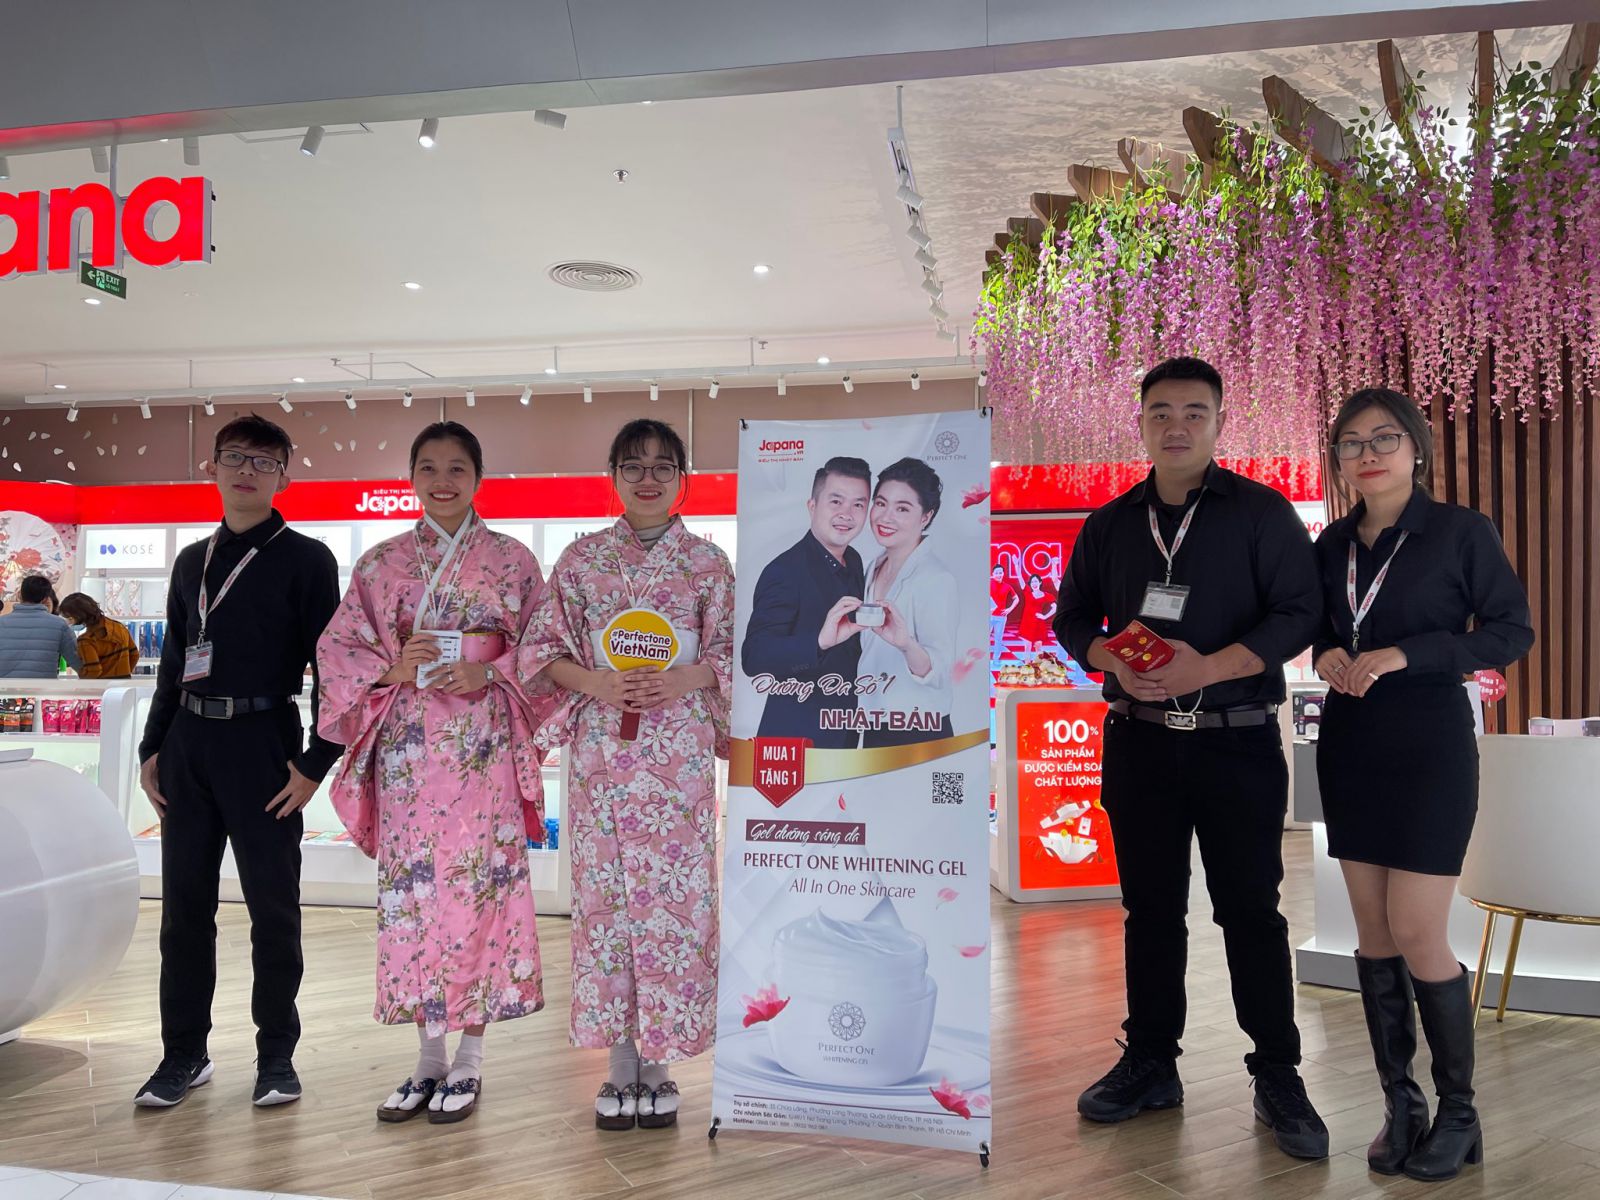 PERFECT ONE đã kết hợp cùng Siêu thị Nhật Bản JAPANA tổ chức sự kiện khai trương tại Trung tâm Thương mại lớn nhất Hải Phòng